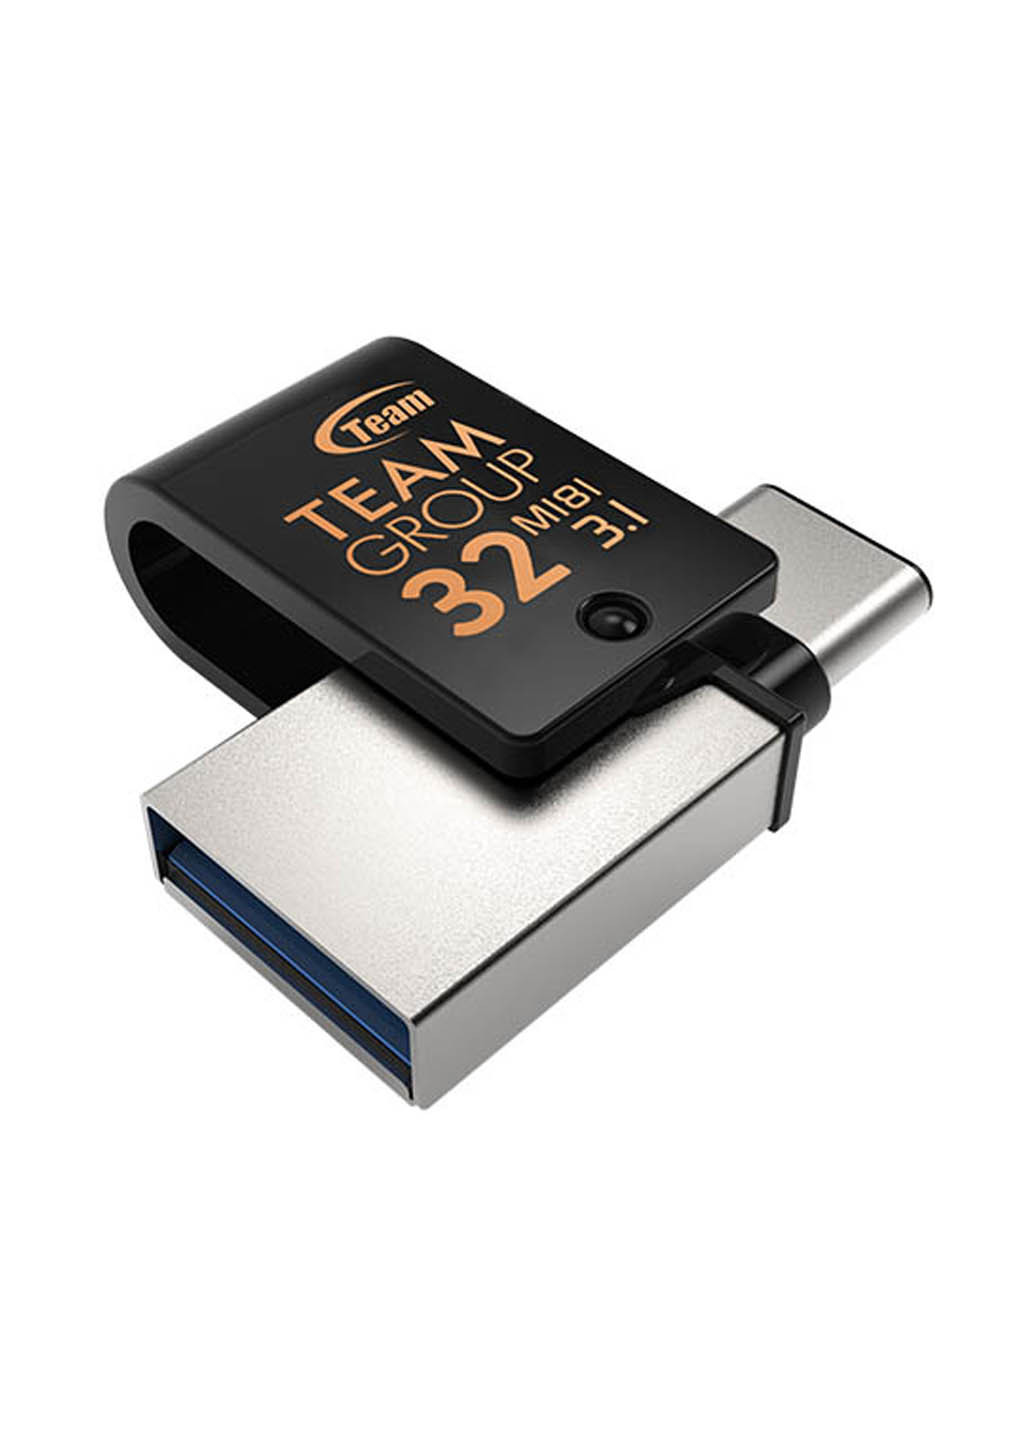 Флеш пам'ять USB M181 OTG 32GB USB / Type-C Black (TM181332GB01) Team флеш память usb team m181 otg 32gb usb/type-c black (tm181332gb01) (134201723)